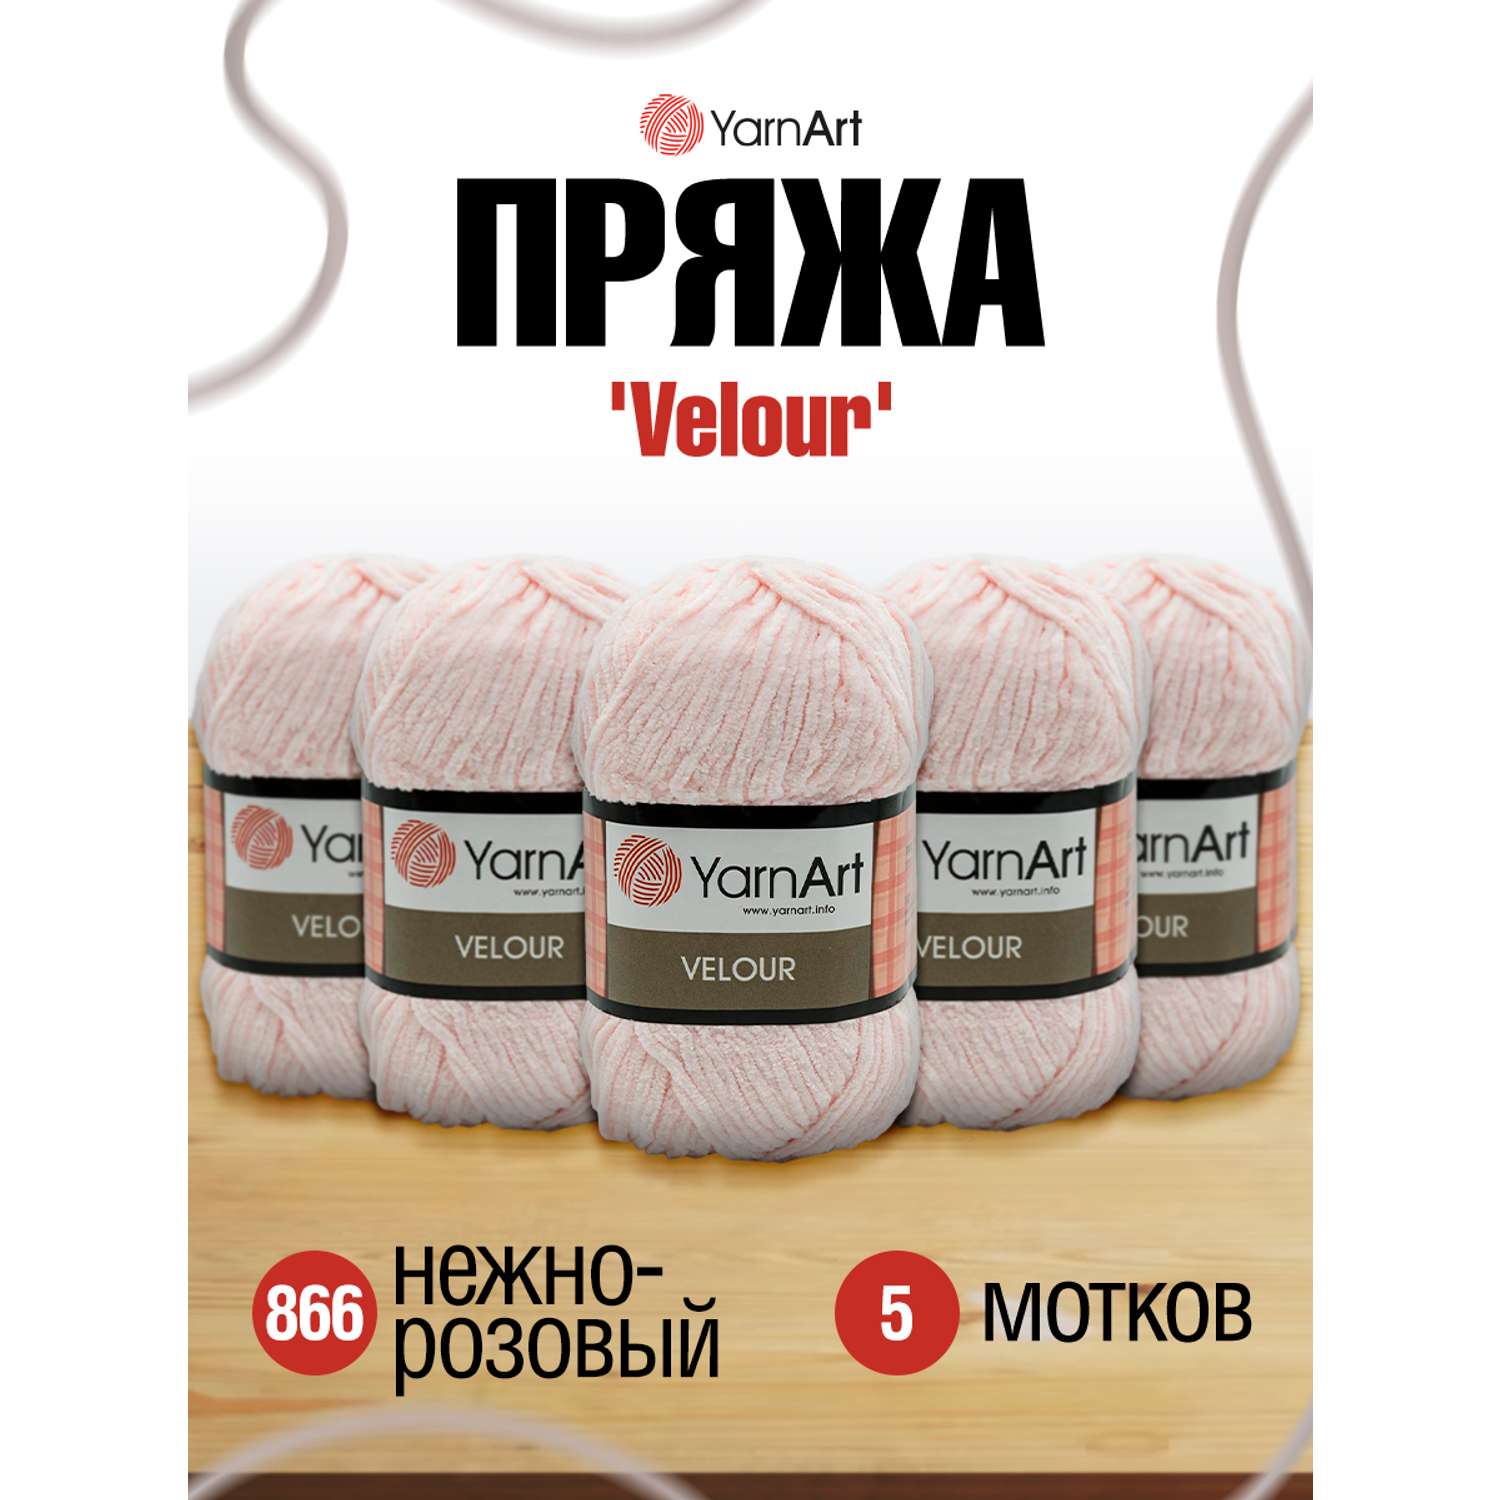 Пряжа для вязания YarnArt Velour 100 г 170 м микрополиэстер мягкая велюровая 5 мотков 866 нежно-розовый - фото 1